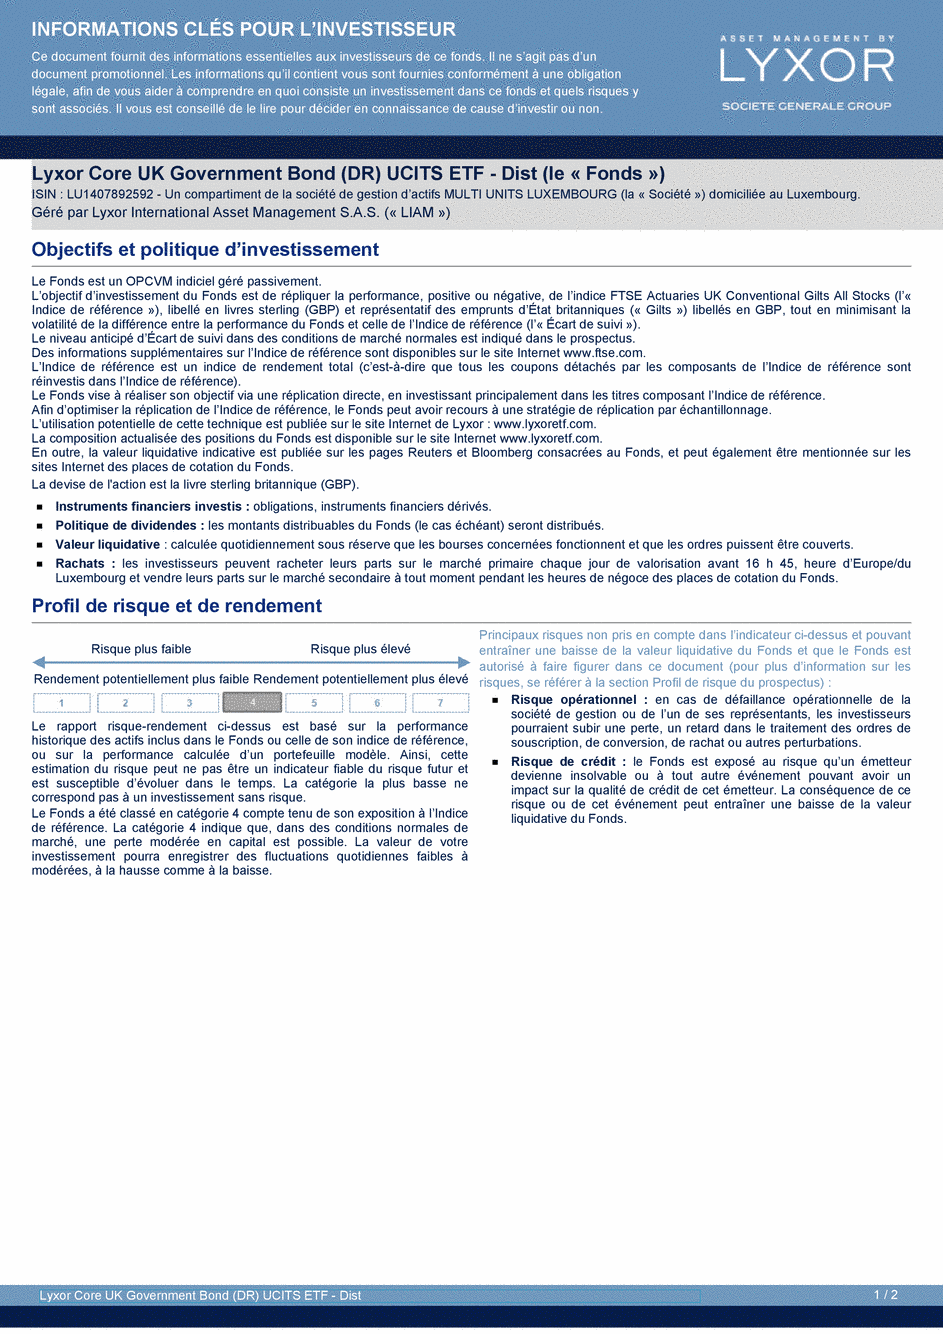 DICI Lyxor Core UK Government Bond (DR) UCITS ETF - Dist - 24/02/2021 - Français